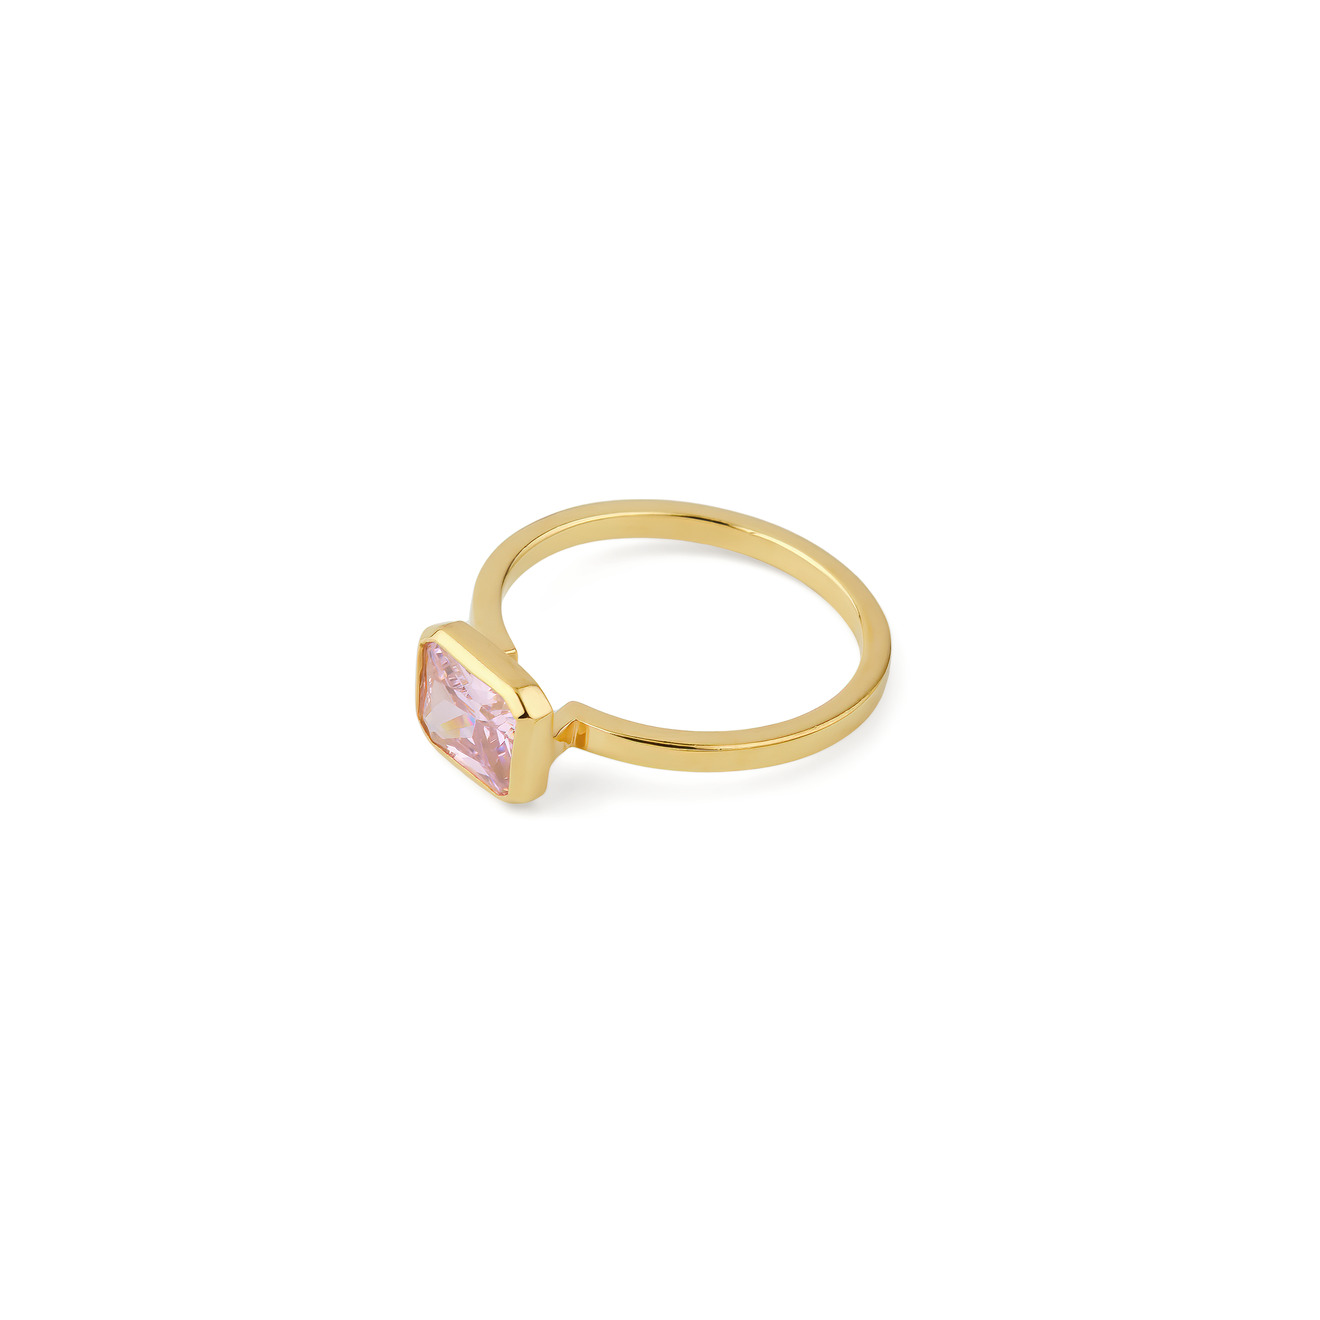 KRASHE jewellery Позолоченное кольцо Lollypop с розовым кристаллом lisa smith золотистое кольцо с розовым кристаллом